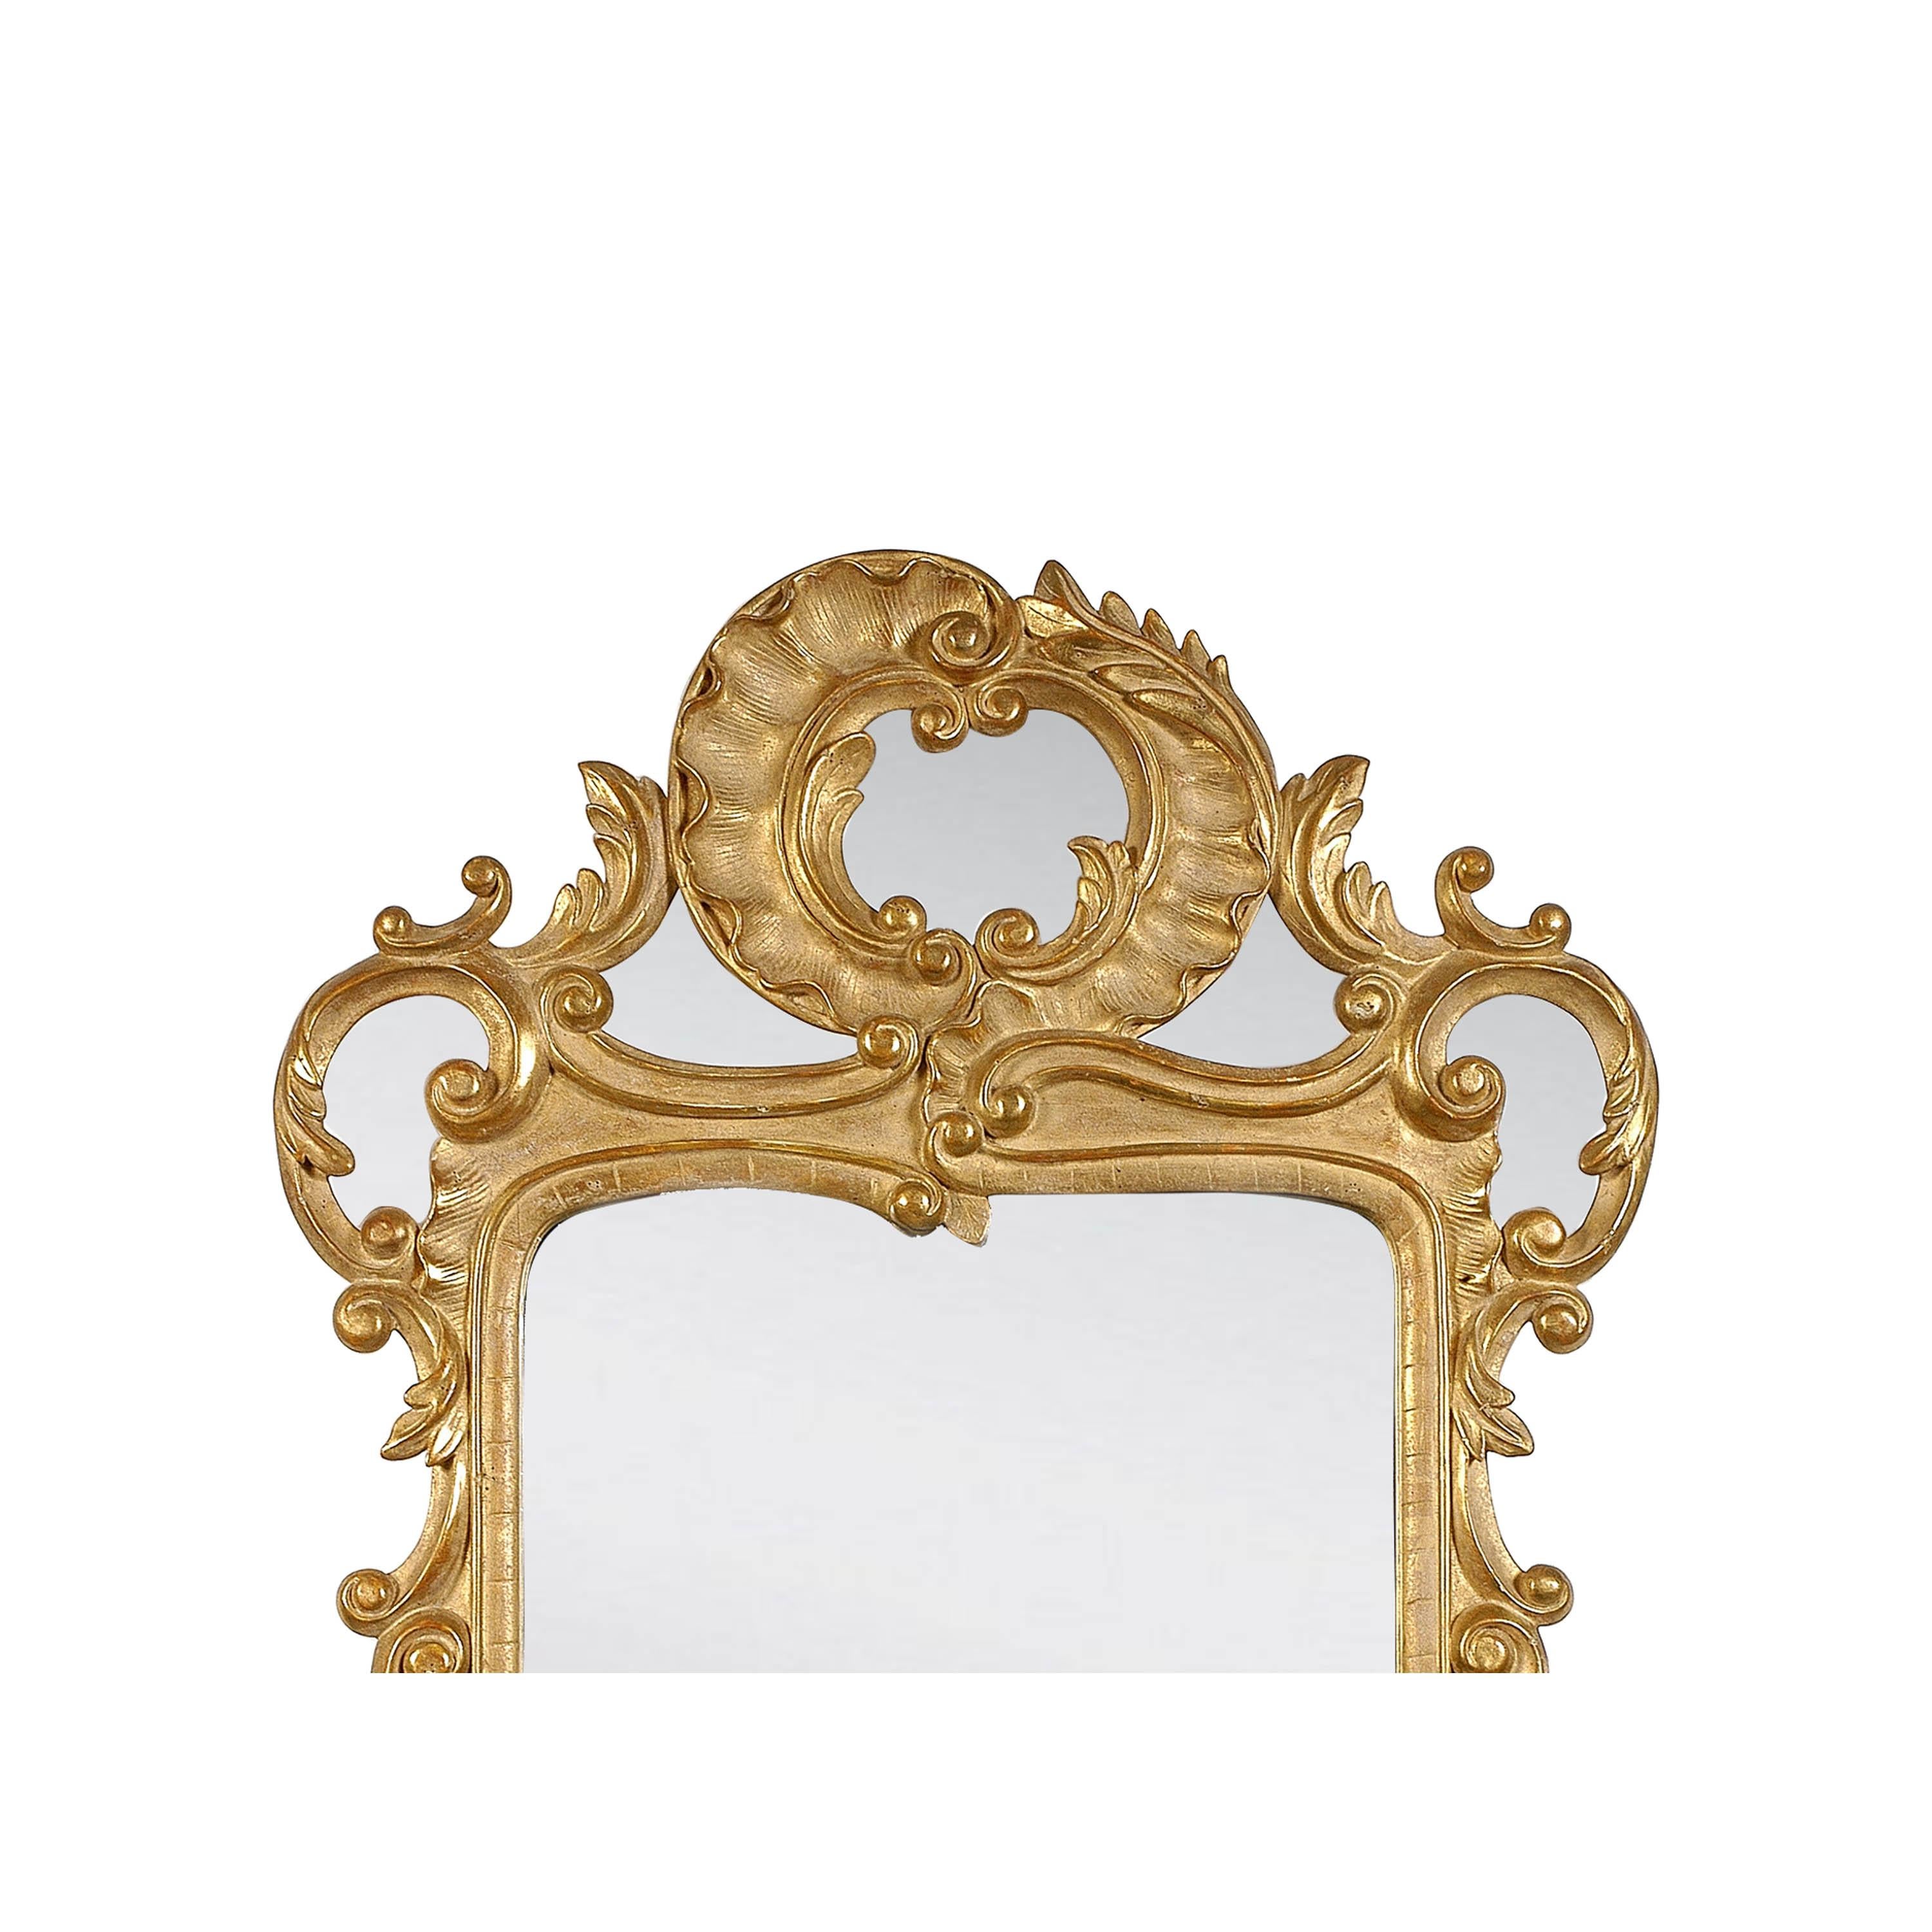 Handgefertigter Spiegel im neoklassizistischen Barockstil. Rechteckige, handgeschnitzte Holzstruktur mit Goldfolie überzogen, Spanien, 1970.